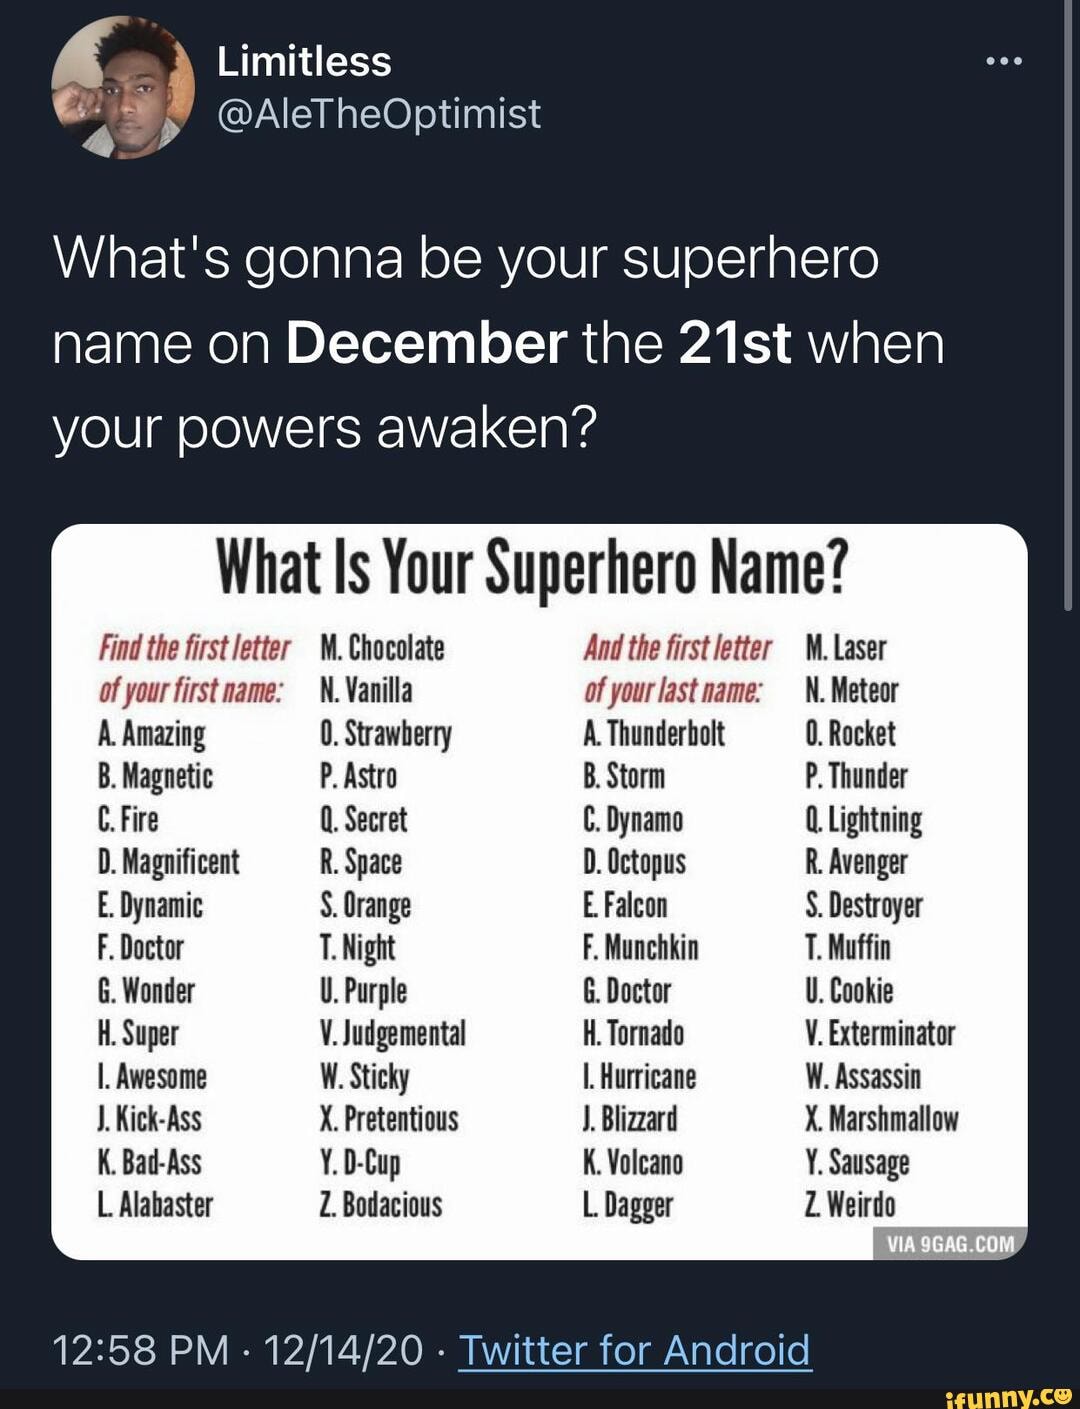 Your superhero name